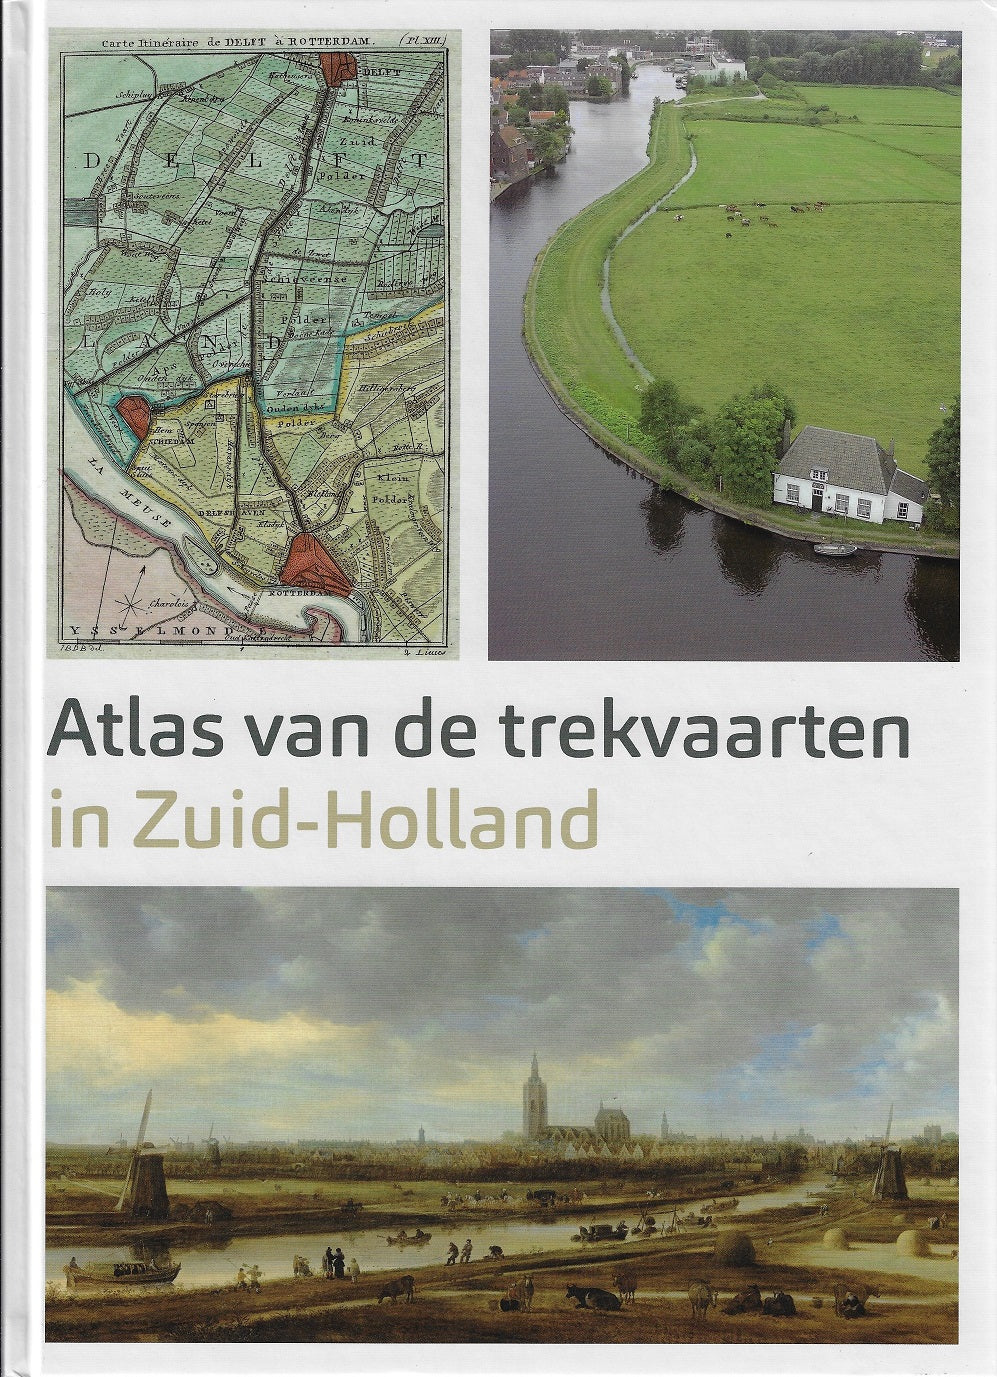 Atlas van de Trekvaarten in Zuid-Holland